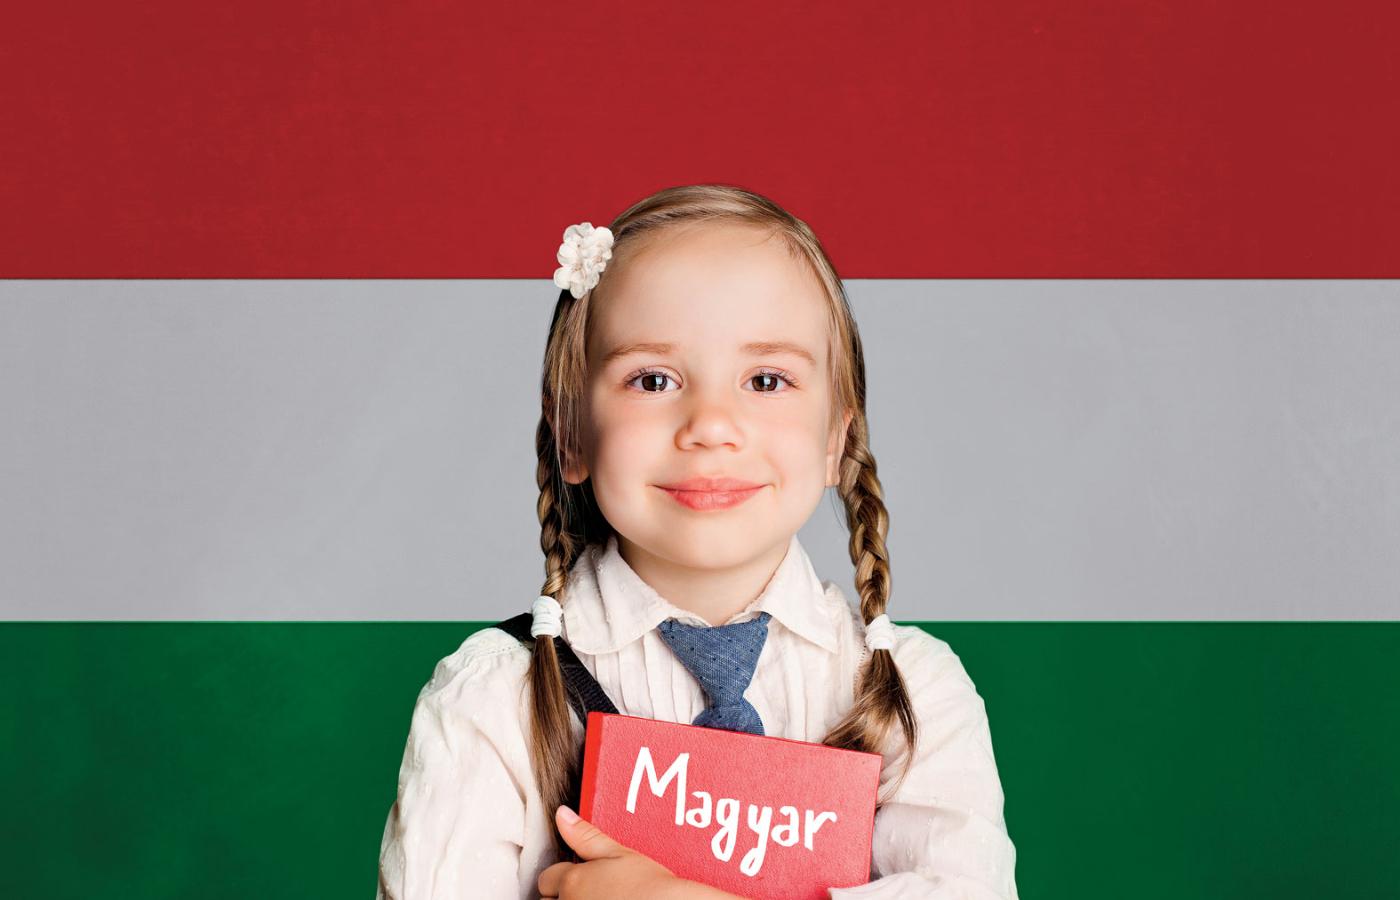 Wskaźnik dzietności podnosi się na Węgrzech powoli, udało się ograniczyć emigrację, ale rząd oprócz zachęt finansowych – zwykle albo niskich, albo trudno dostępnych – nie oferuje rodzinom sprawnego państwa.